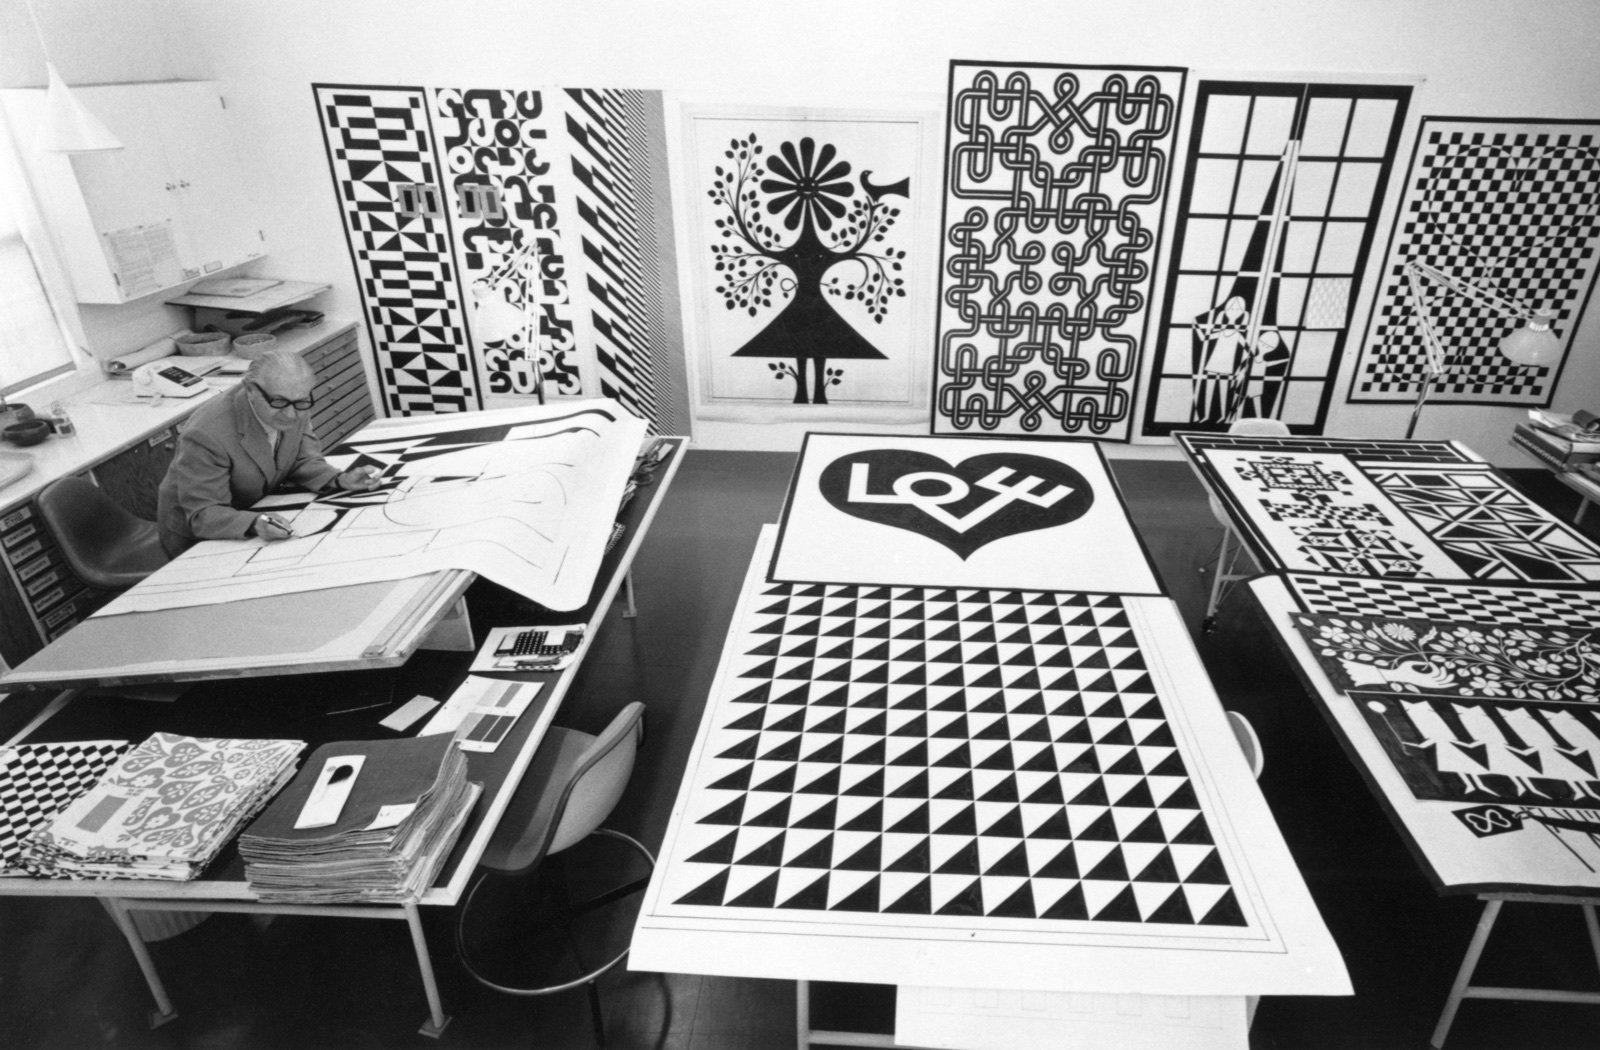 Girards Studio in Santa Fe, NM, 1971